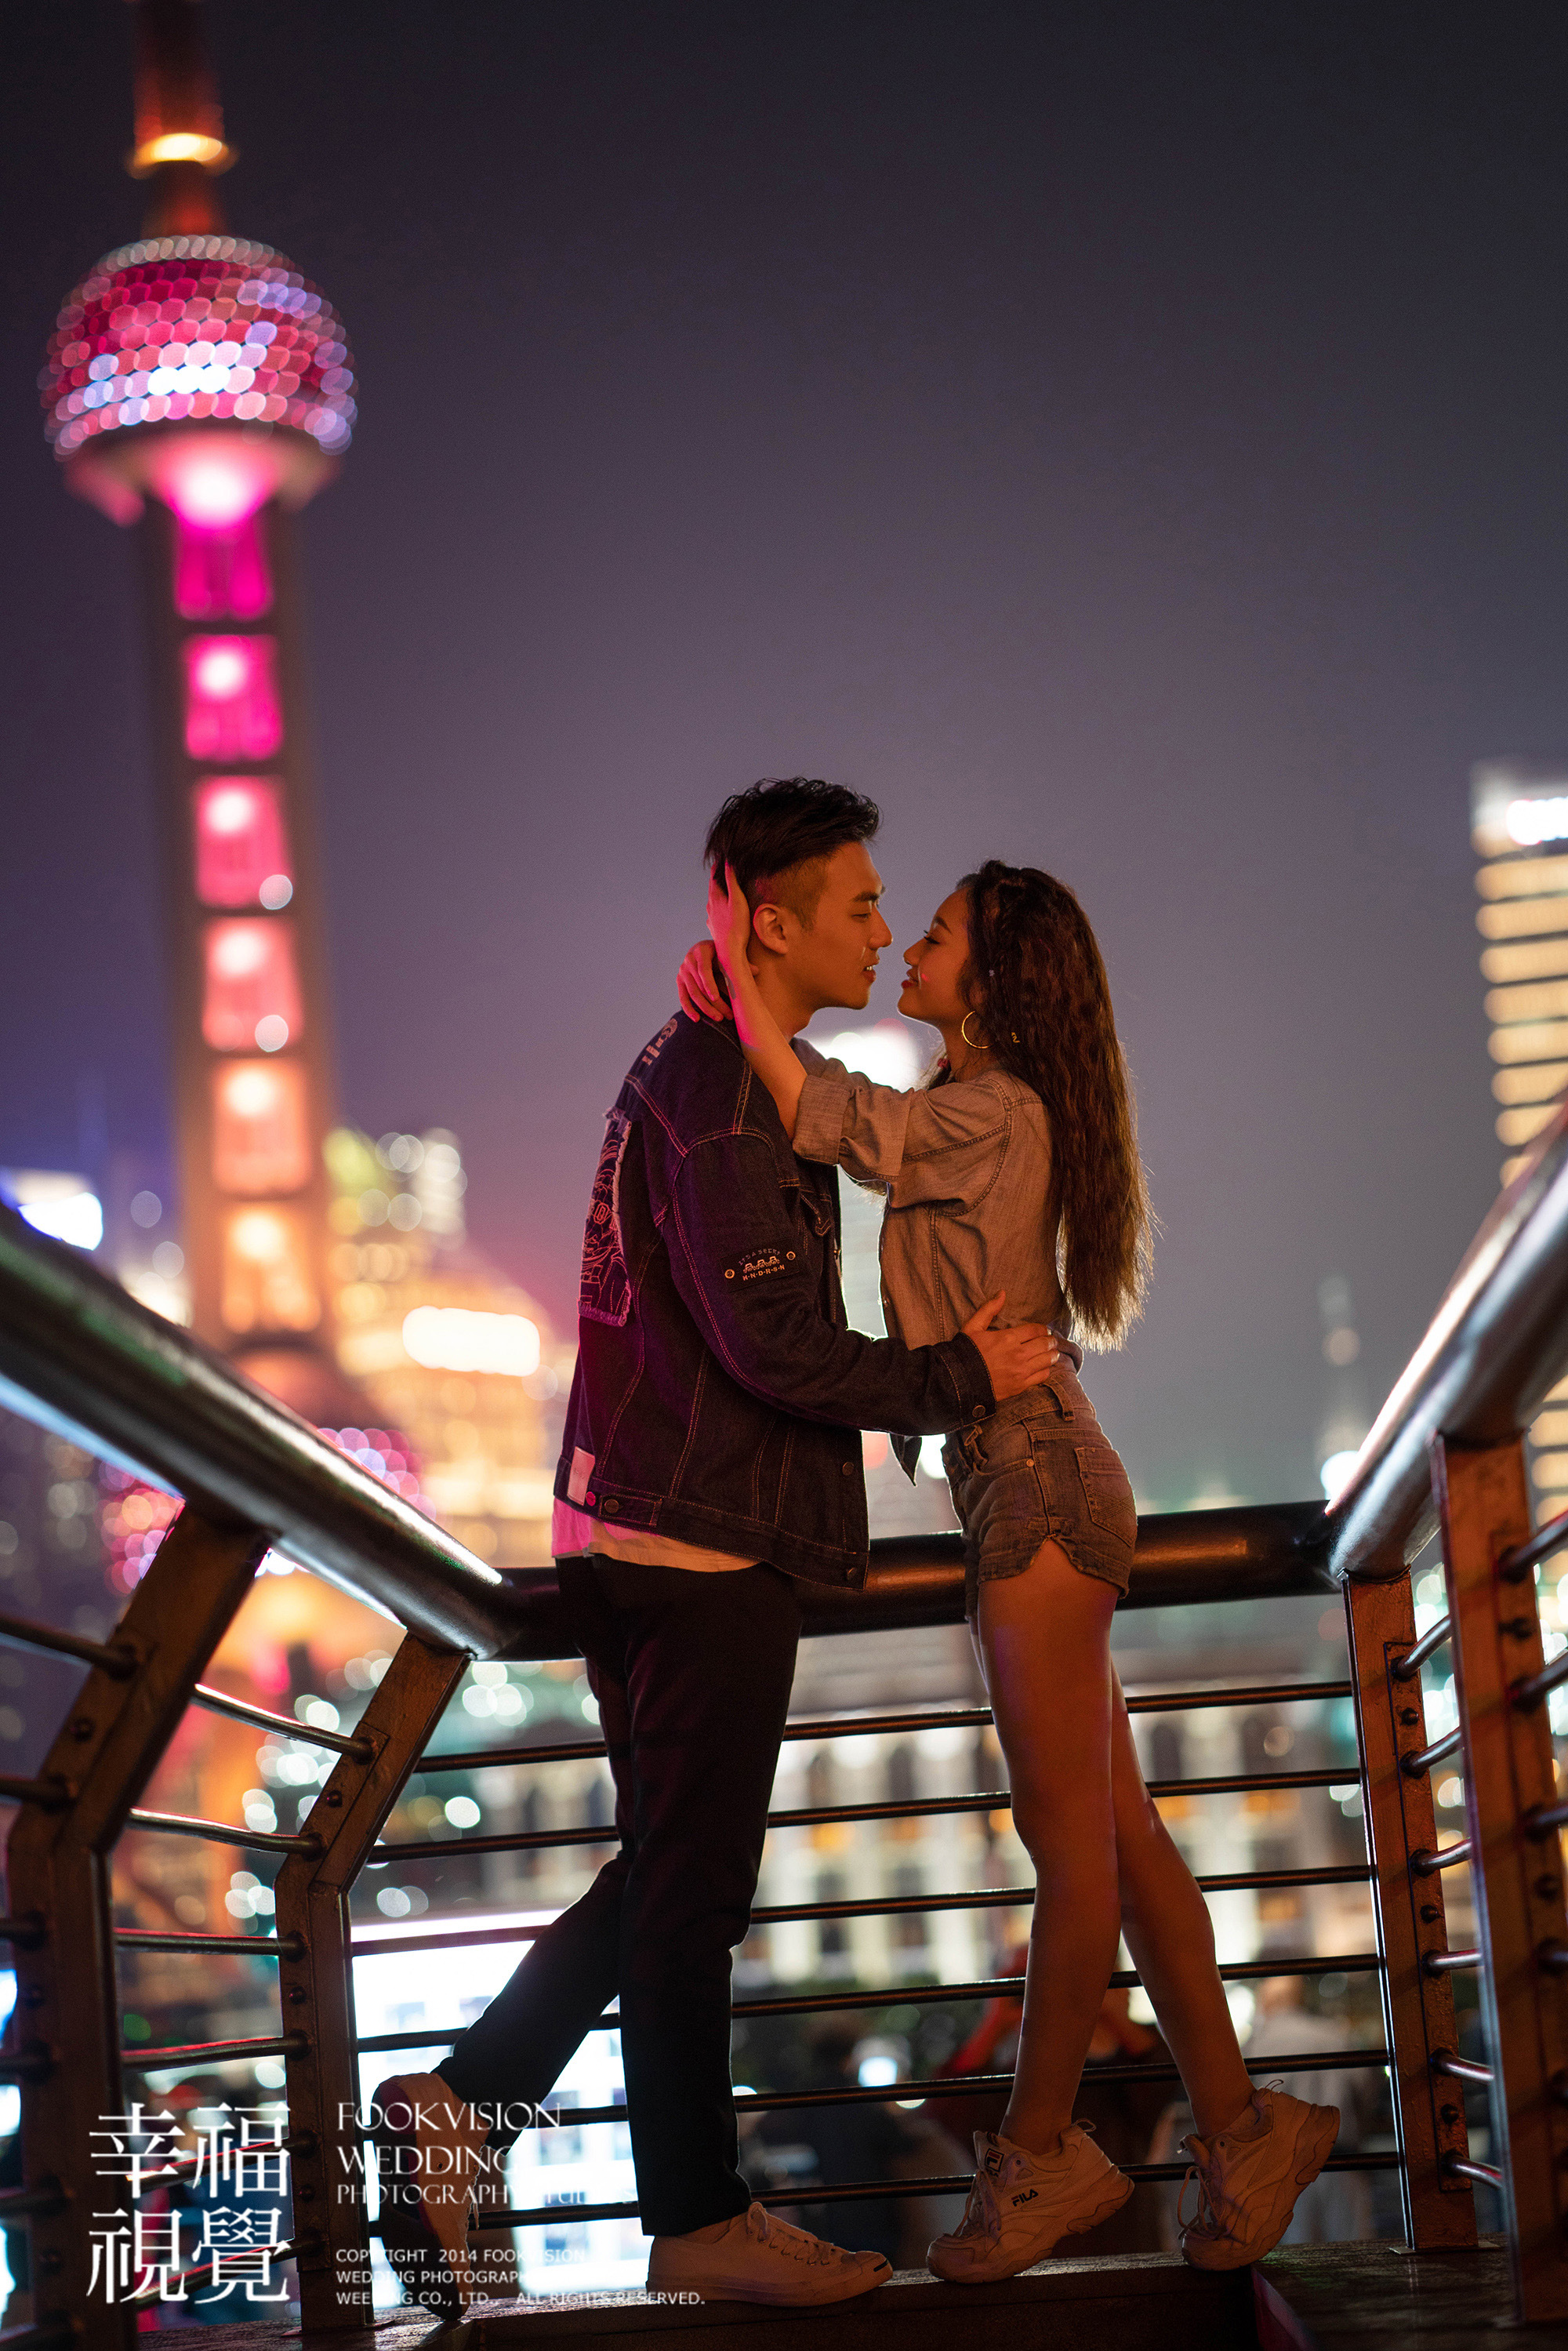 上海东方明珠夜景婚纱摄影 fookvision